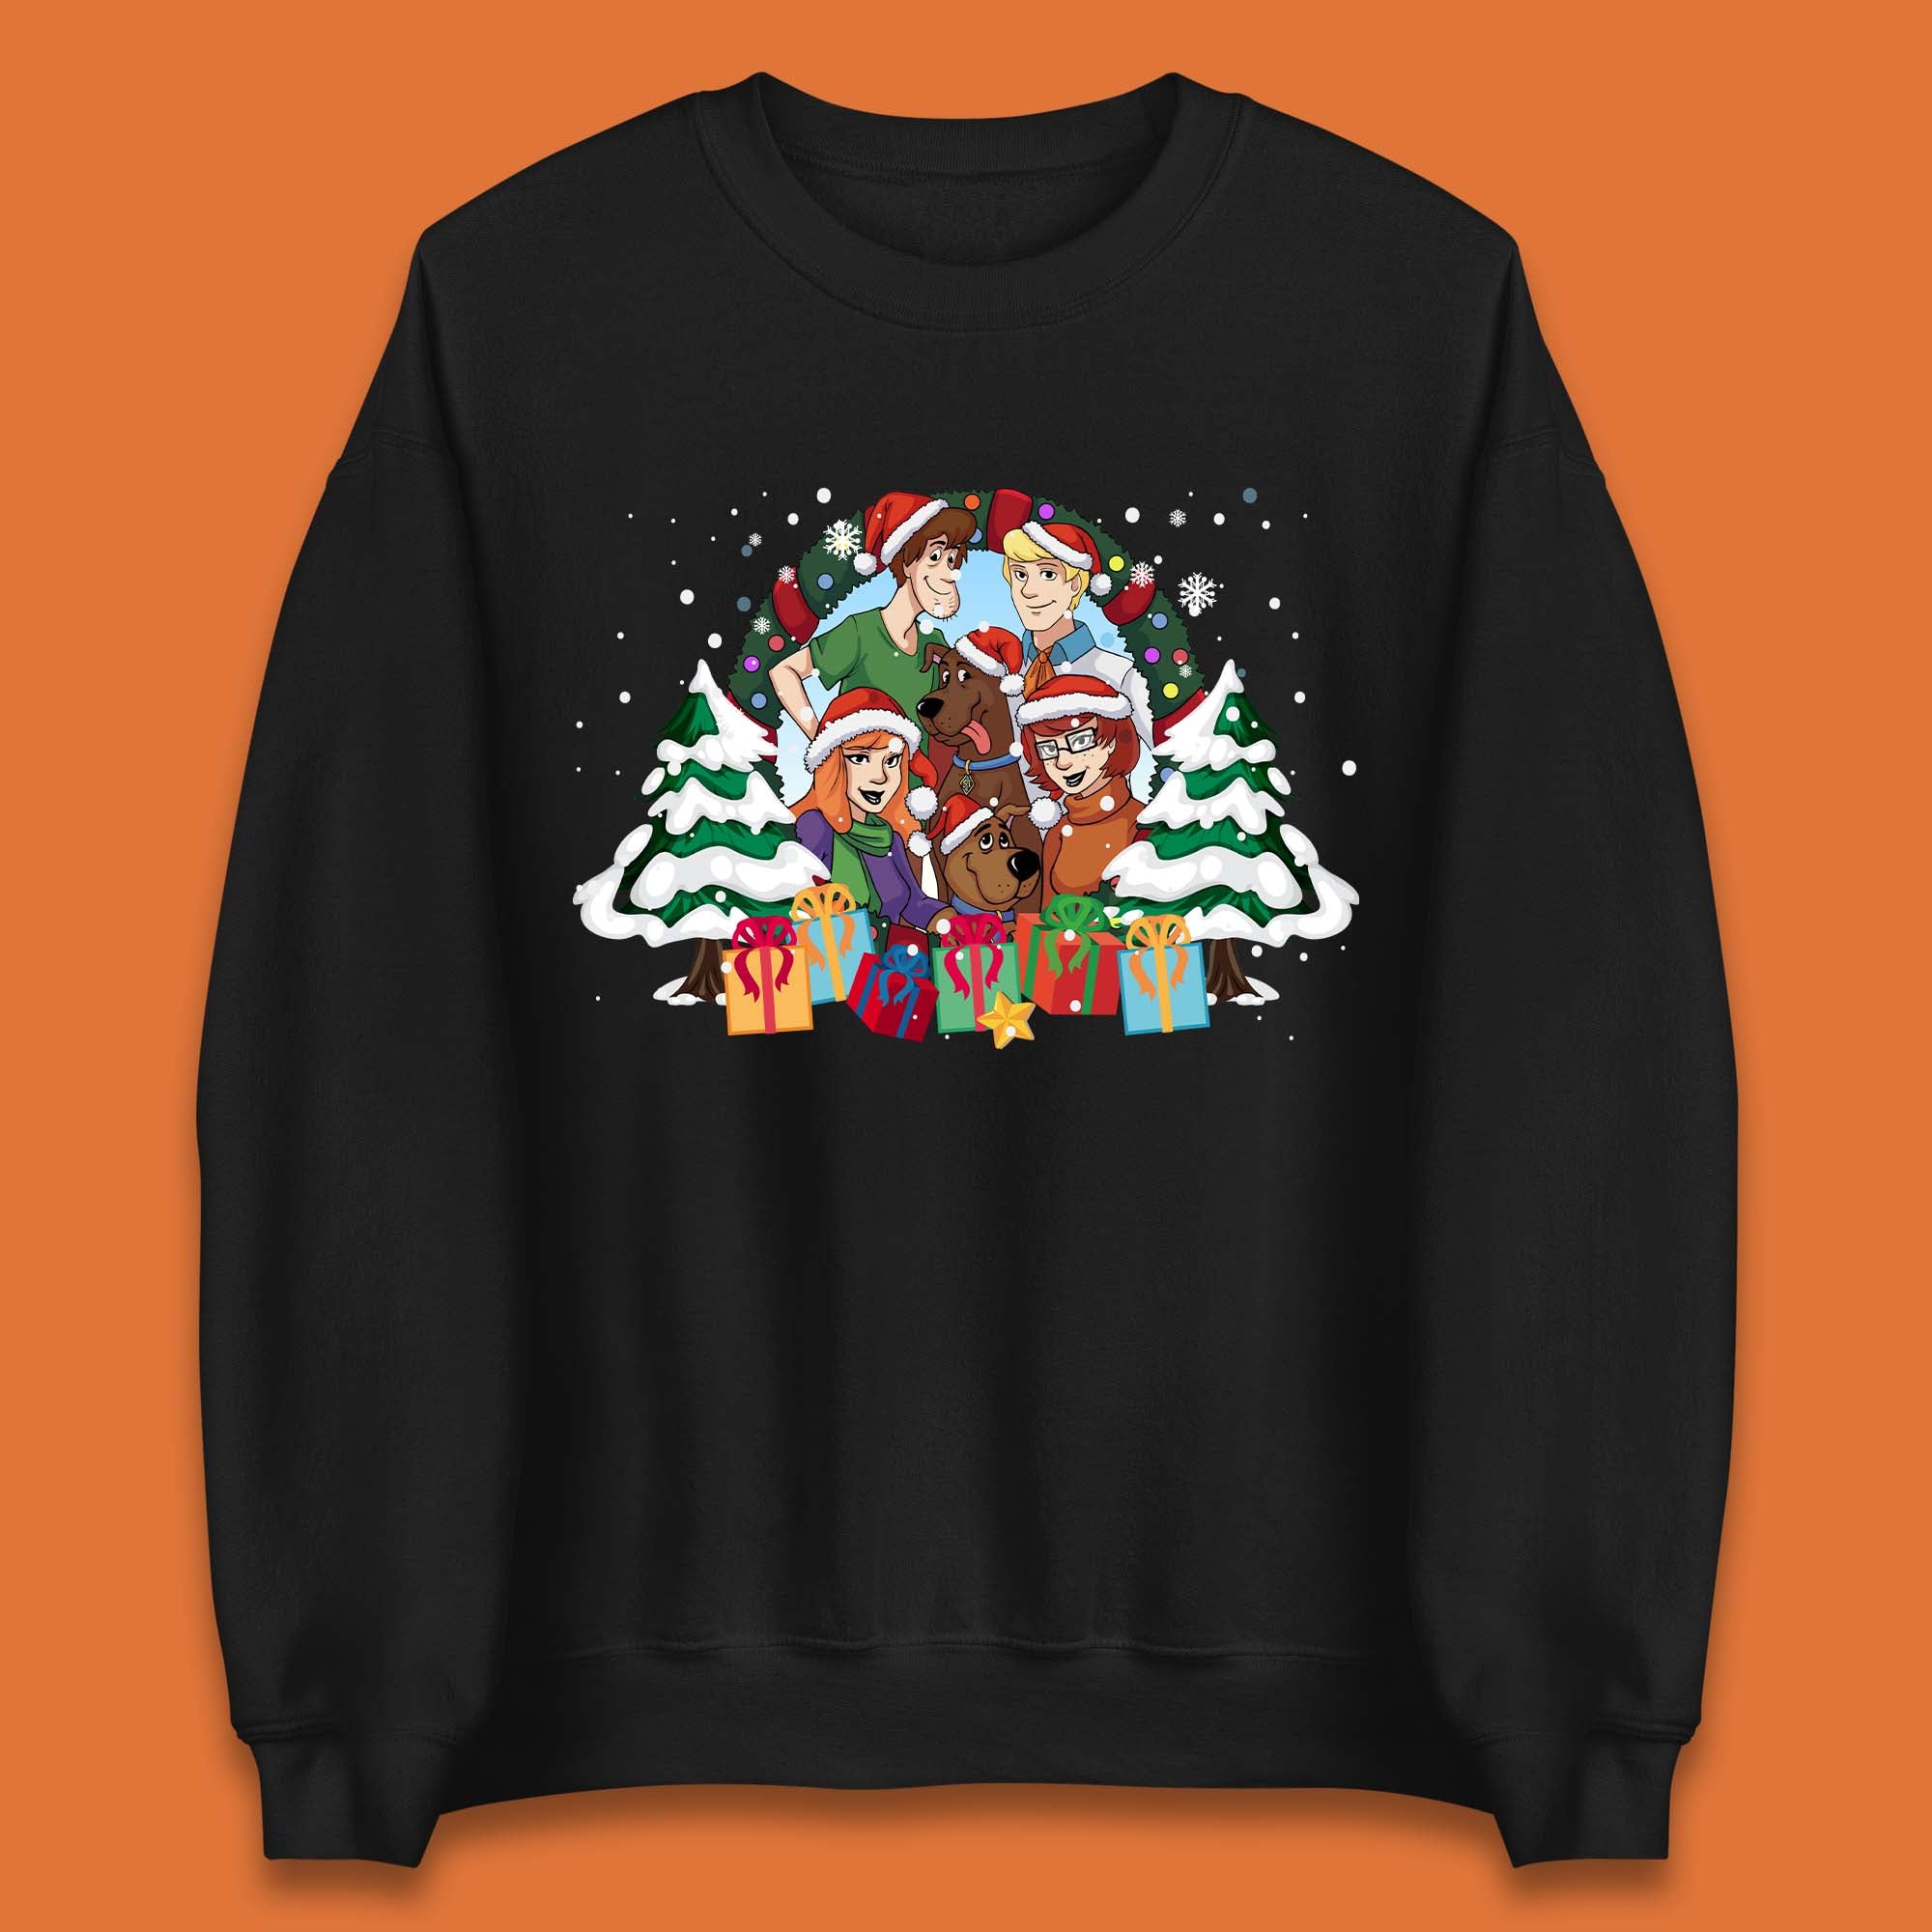 Scooby Doo Christmas Unisex Sweatshirt